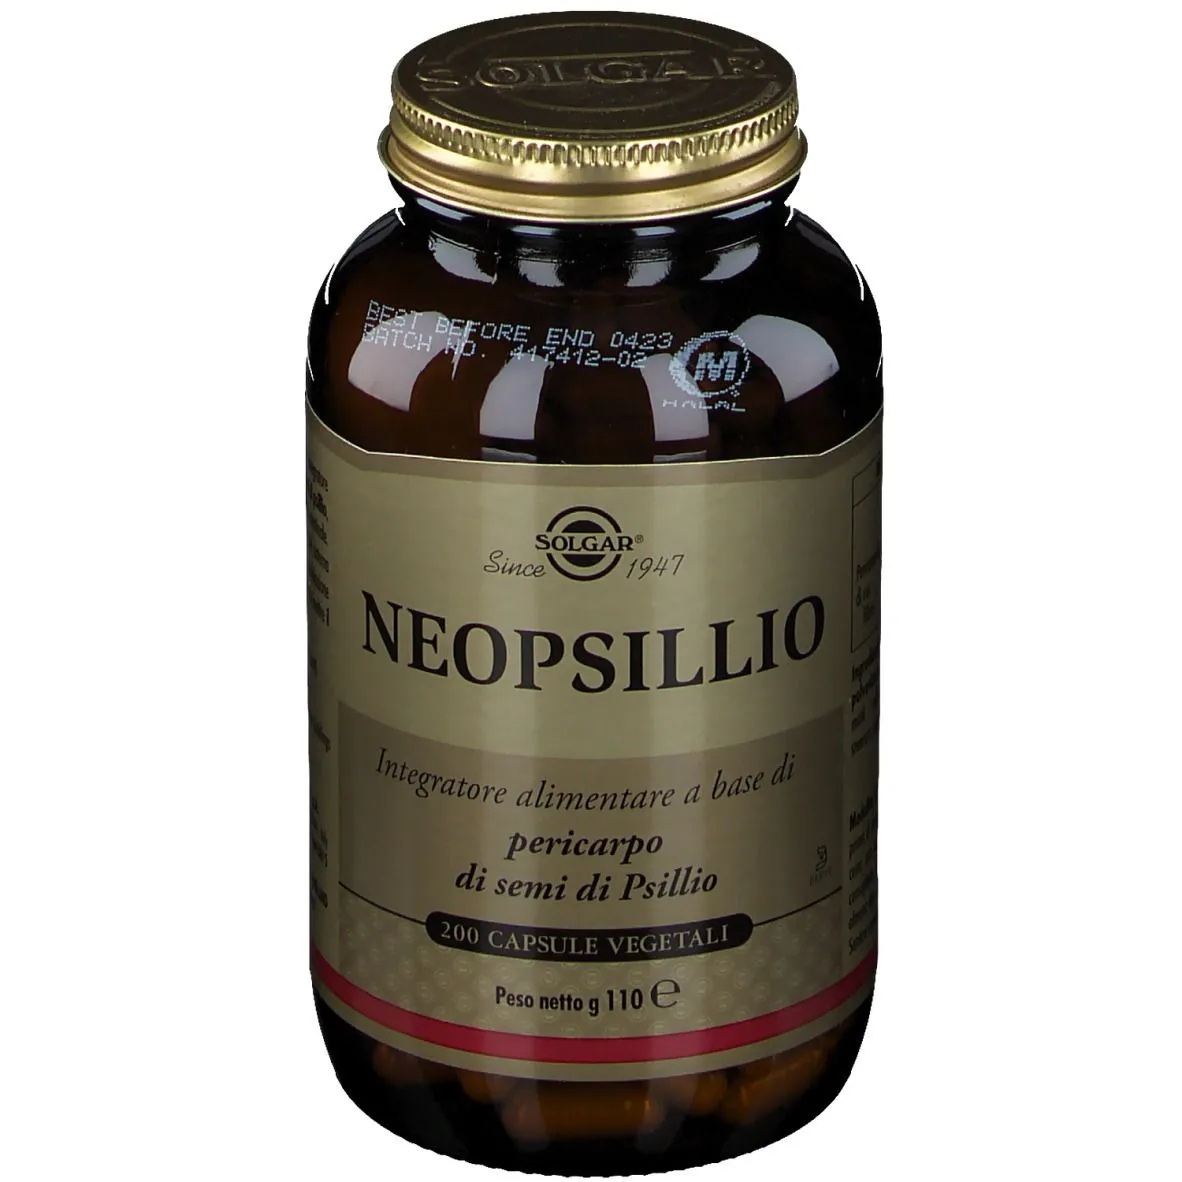  Neopsillio